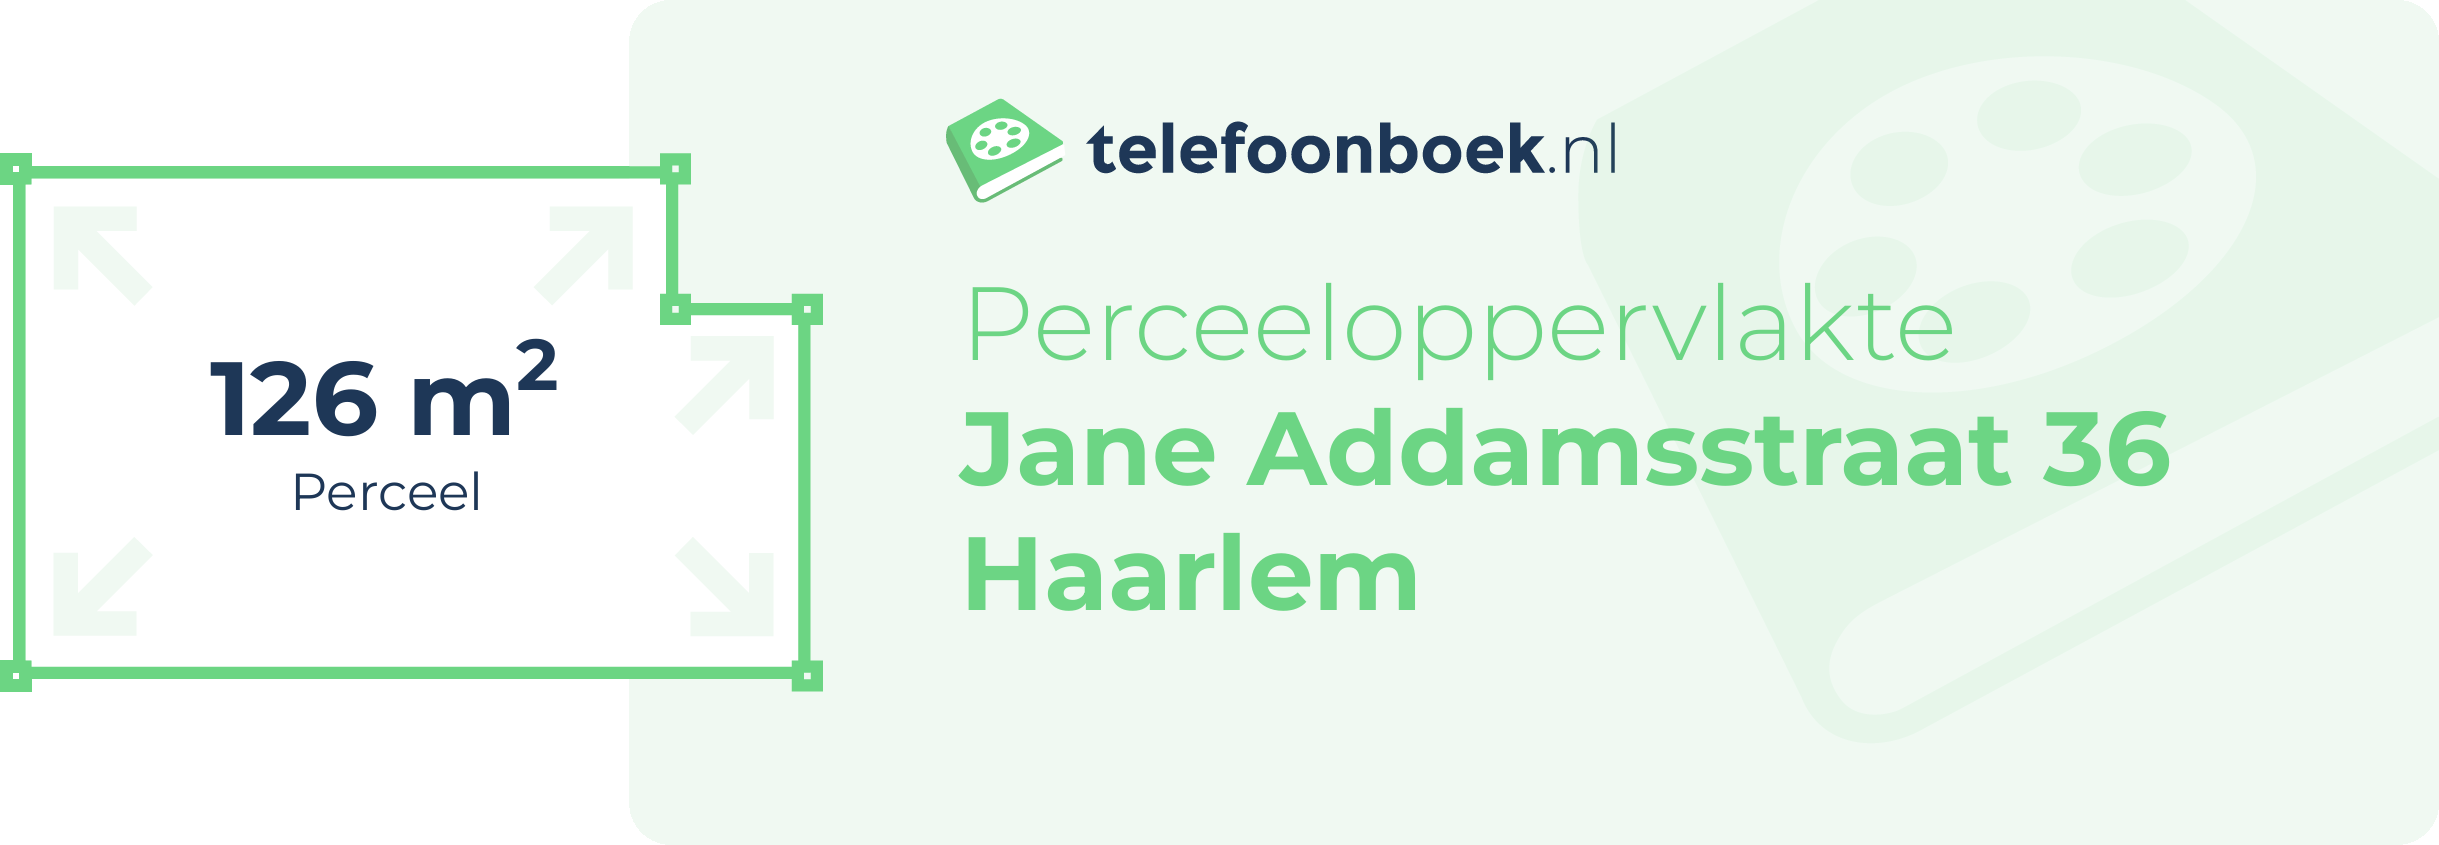 Perceeloppervlakte Jane Addamsstraat 36 Haarlem